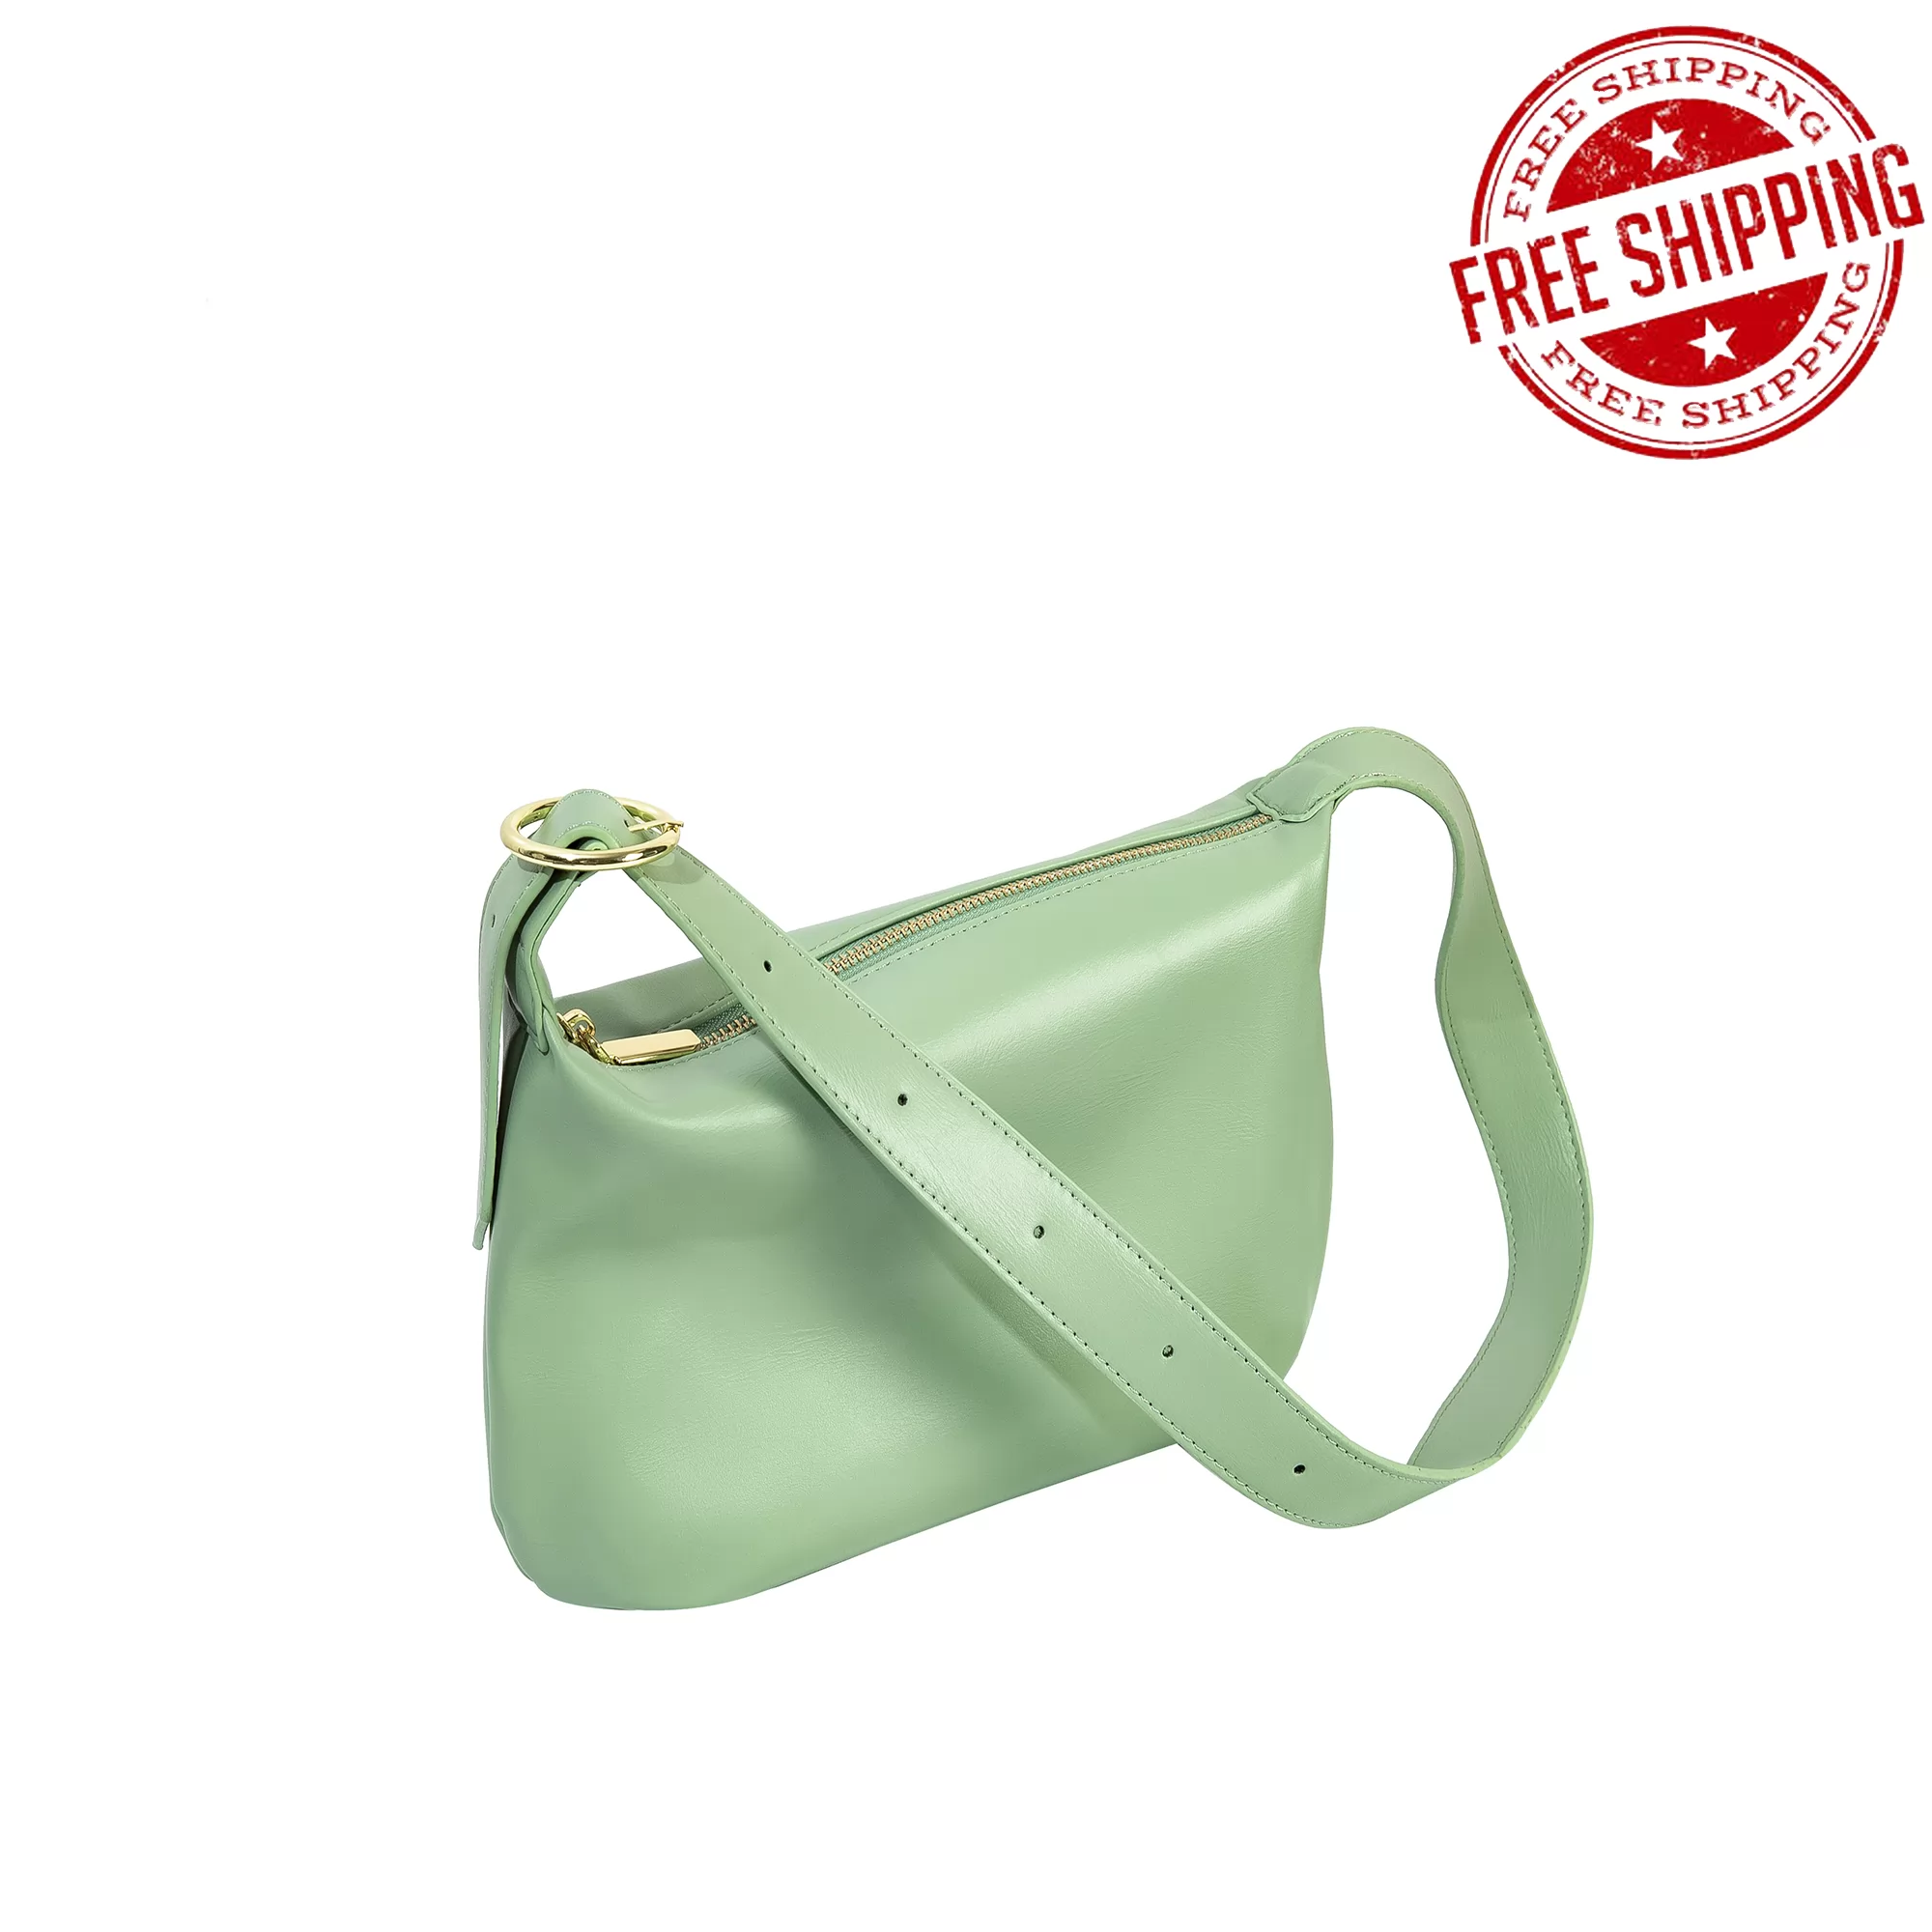 Dominivv Handbag-Shoulder Bags - Baguette bag